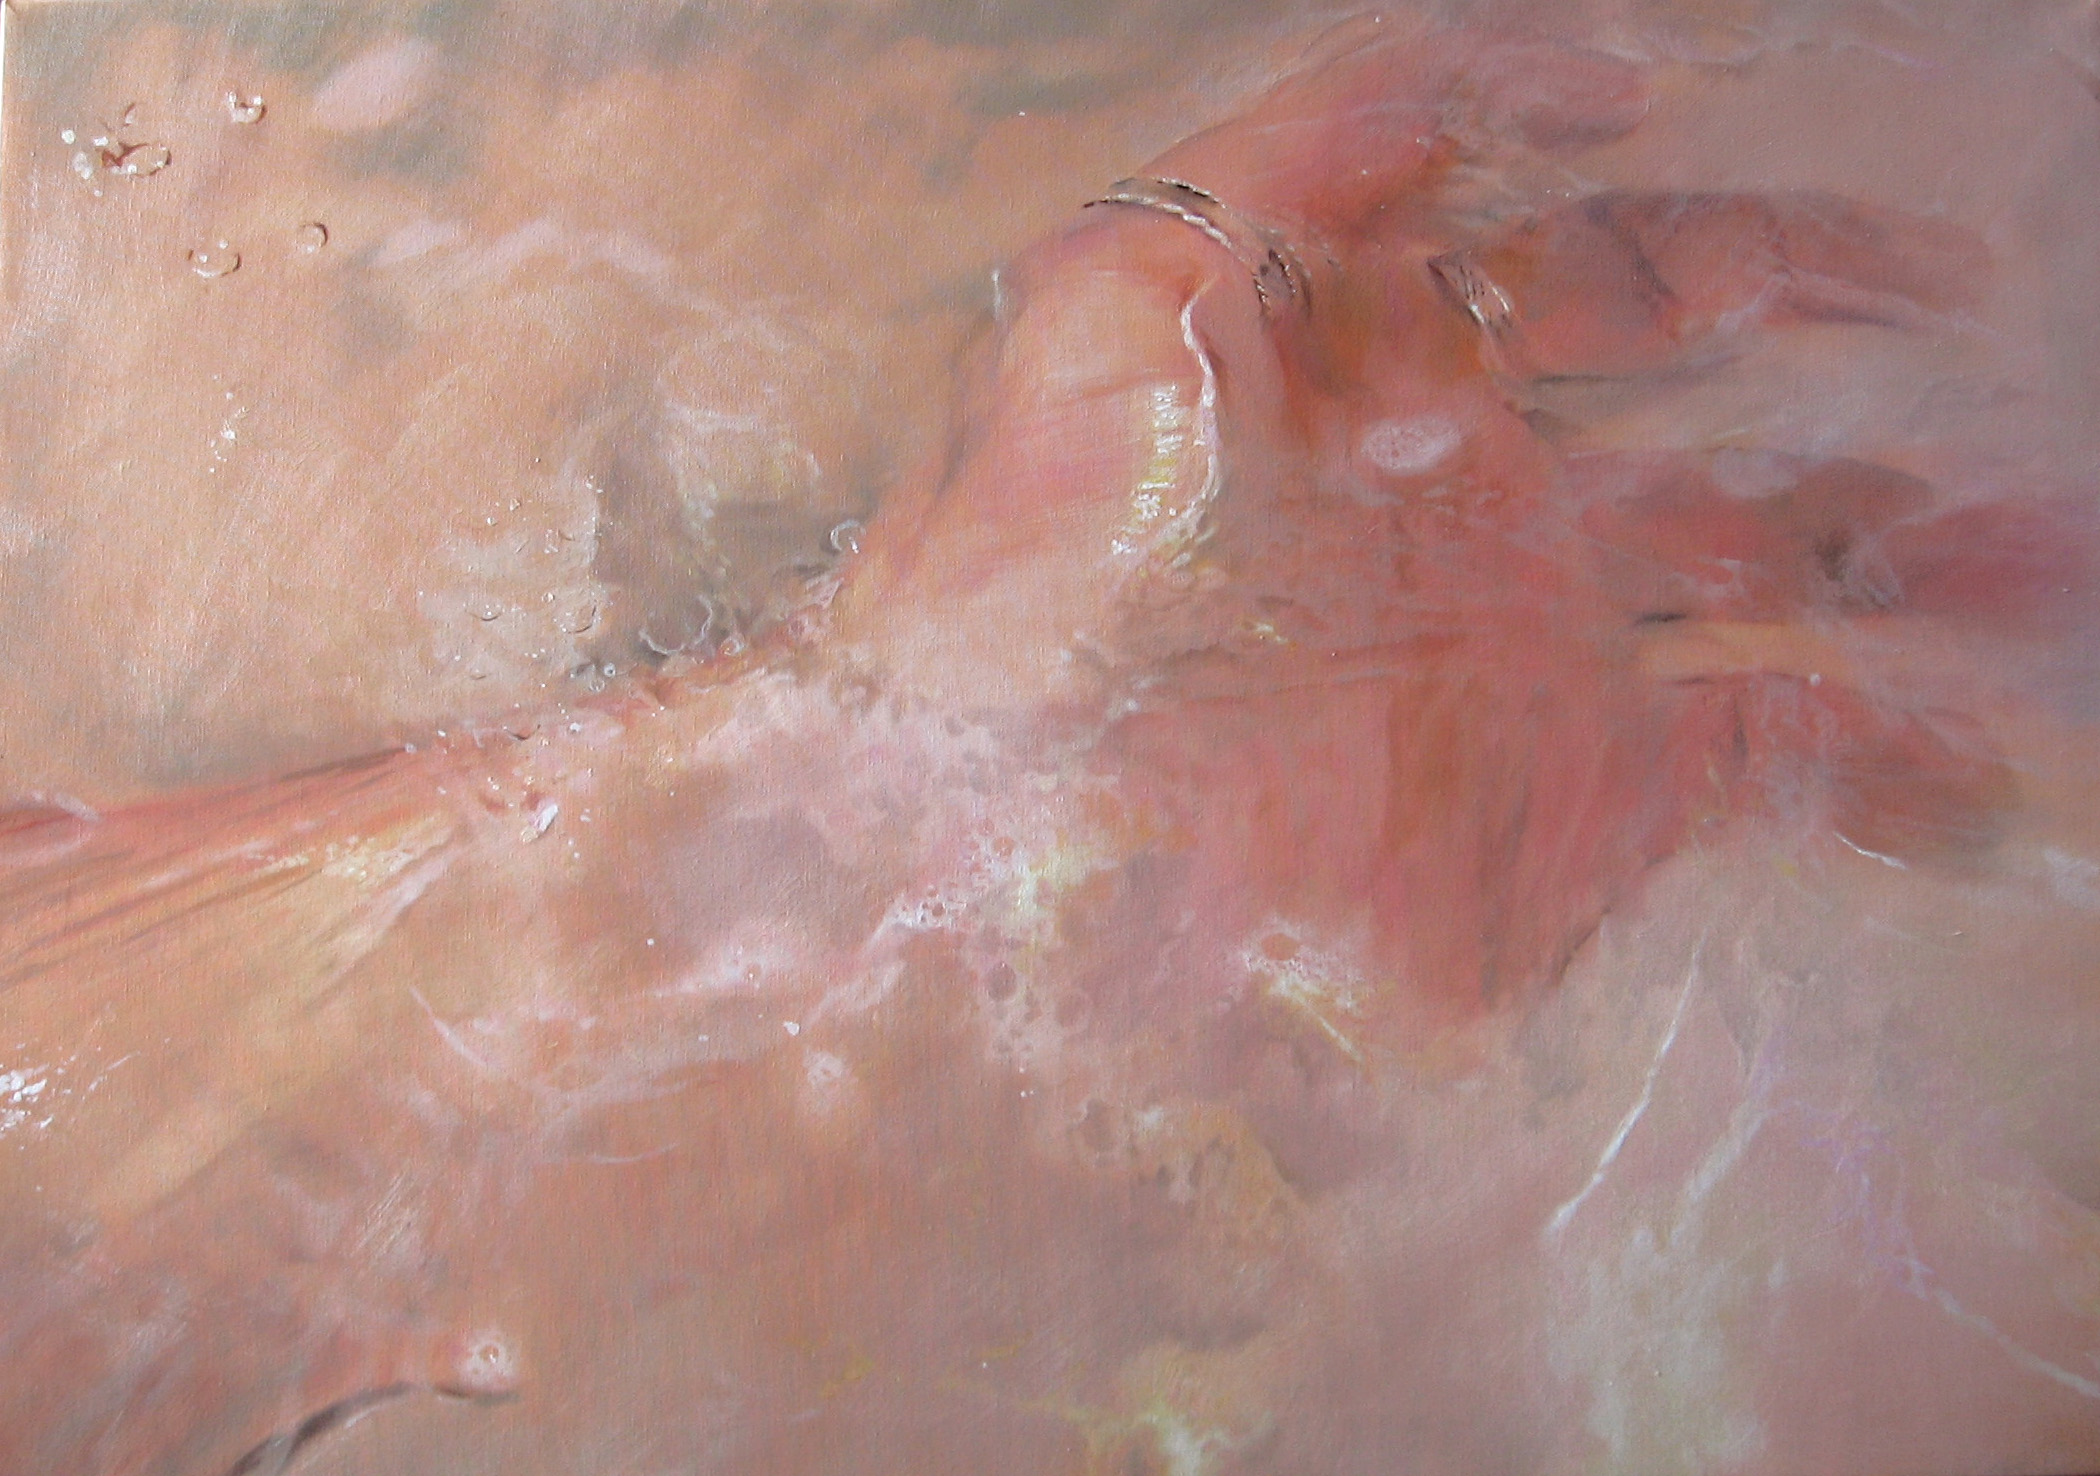 
'Amputazione del gesto' 
(2008), 
óleo sobre lienzo, 
70x100 cm. 
Colección privada
